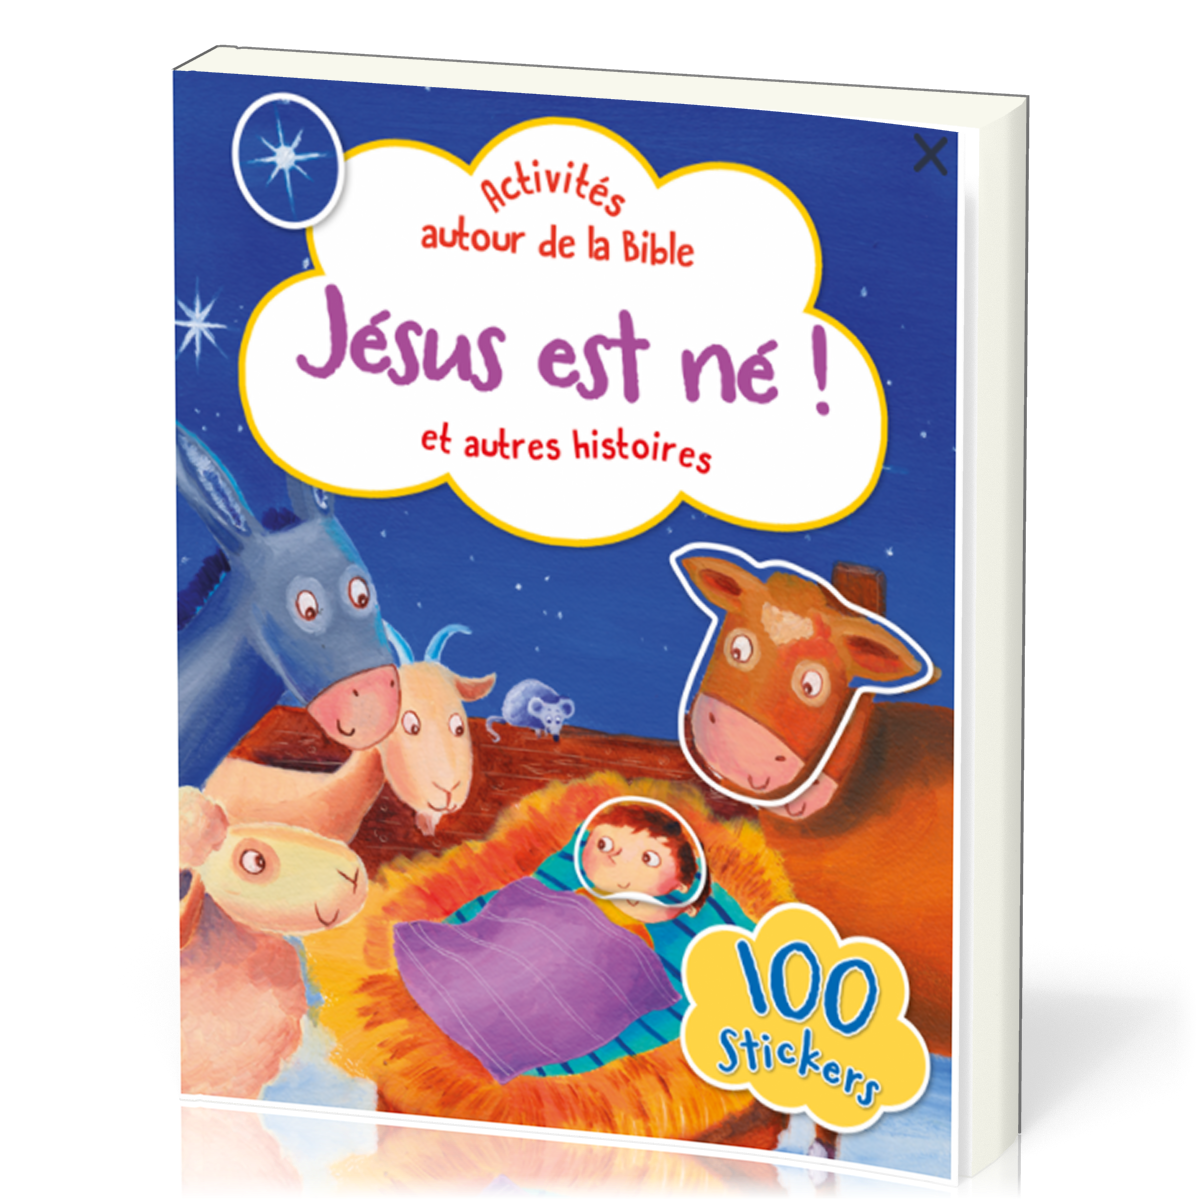 Jésus et né ! - Activités autour de la Bible avec 100 stickers